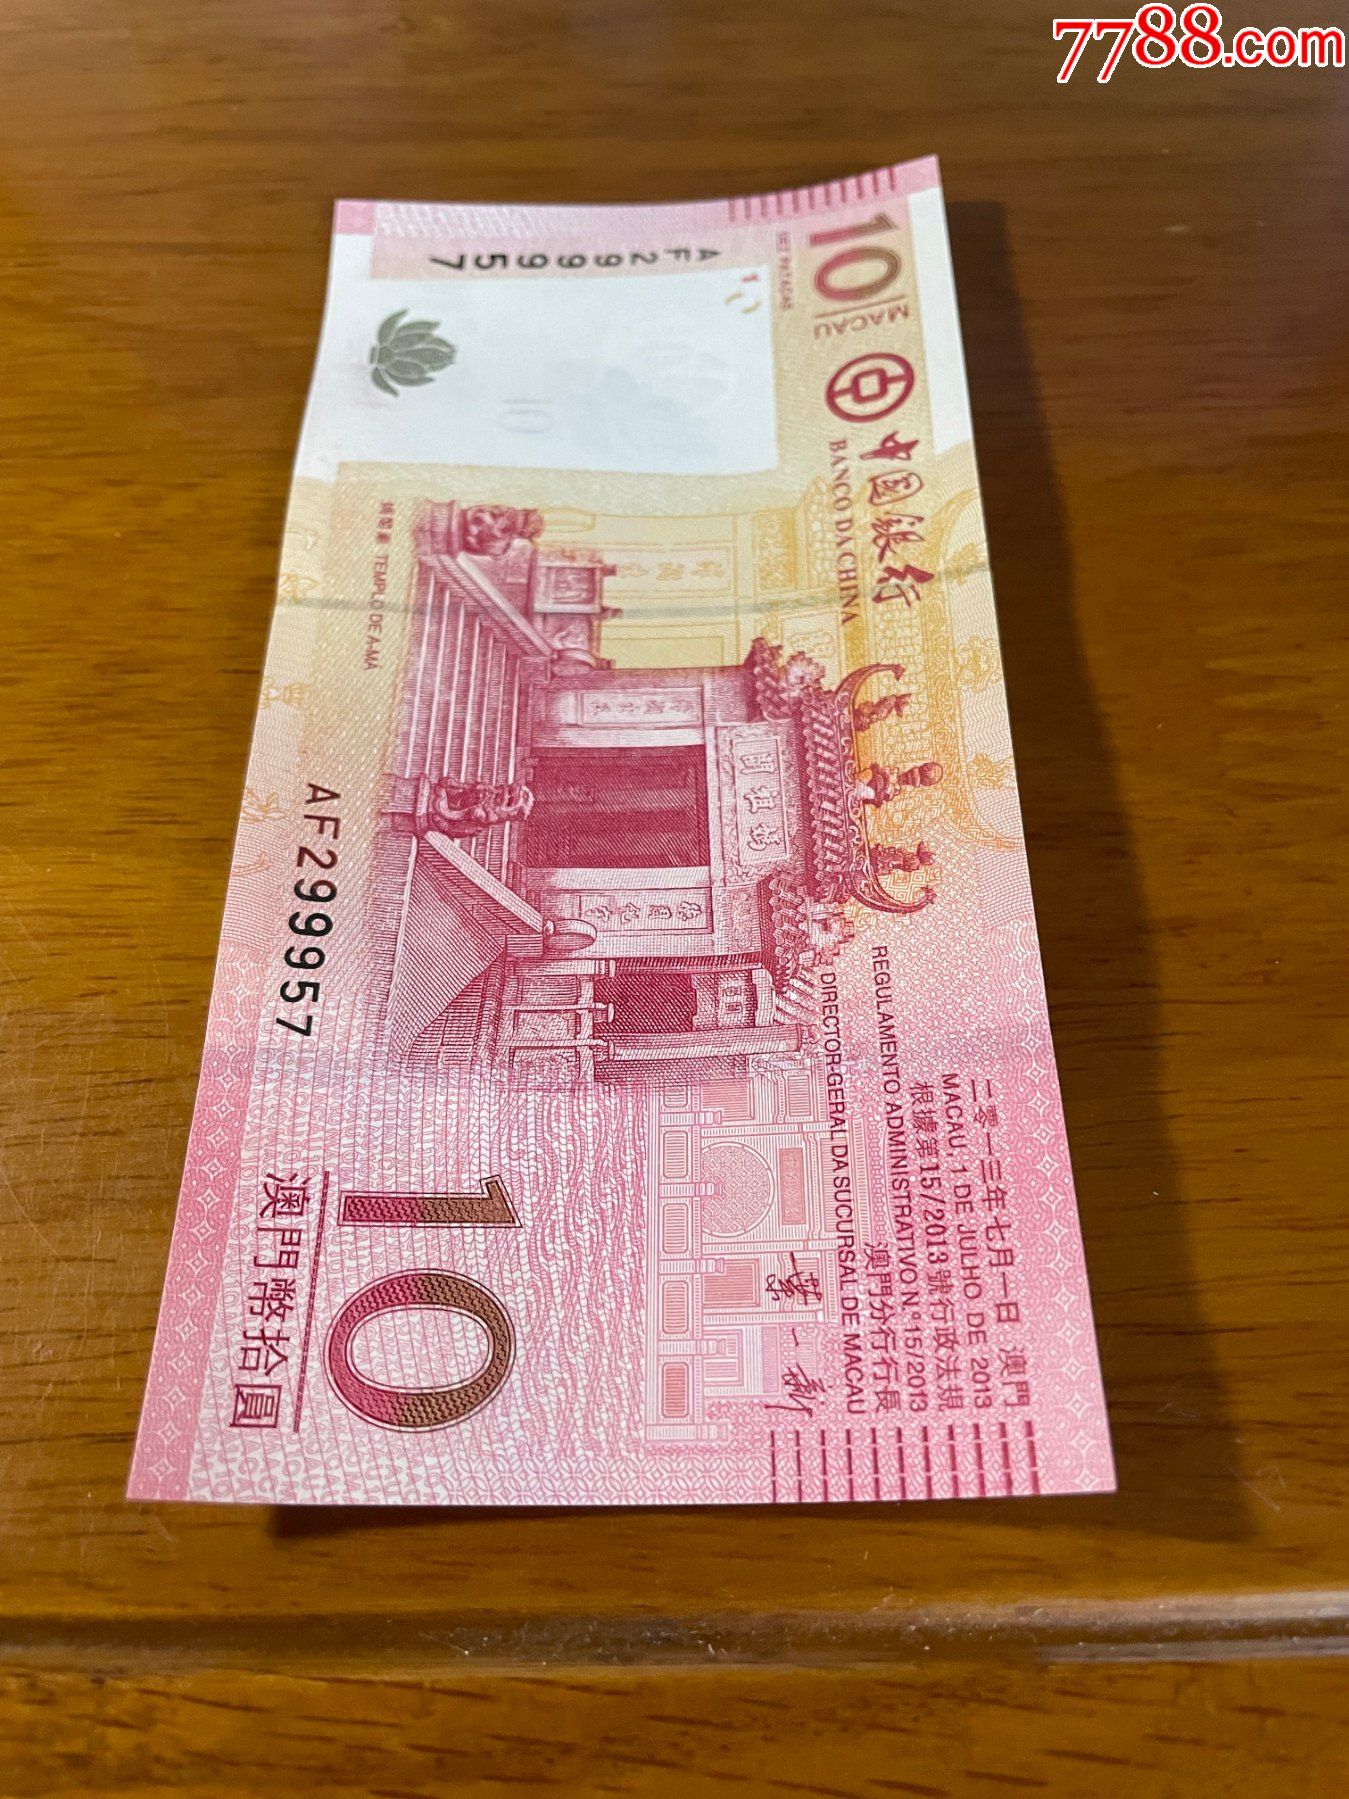 2008,2013中国银行发行澳门元纪念钞